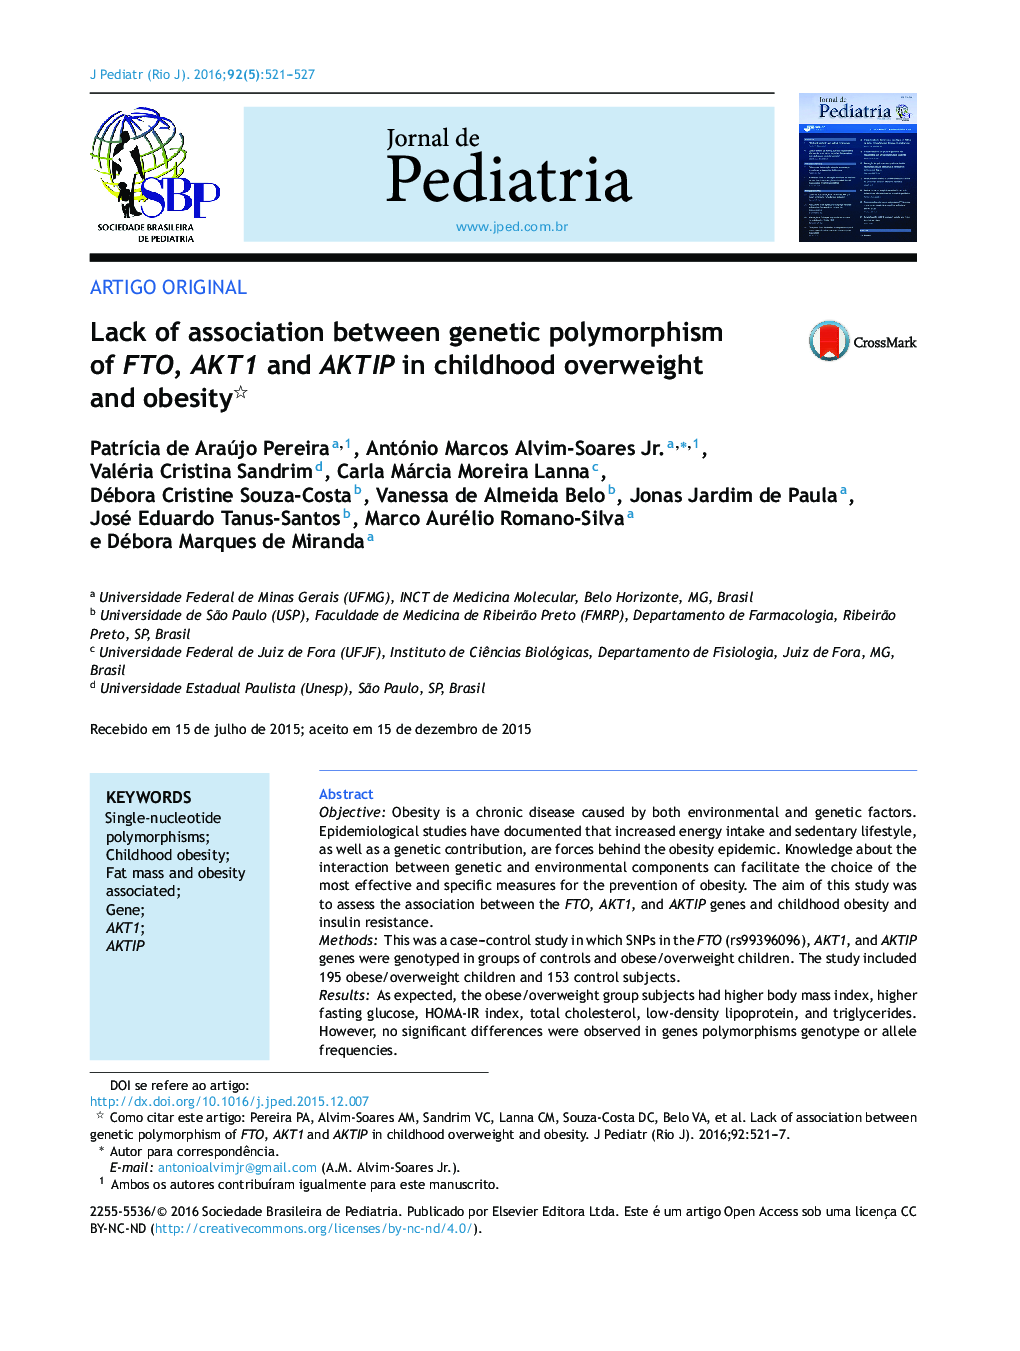 عدم ارتباط بین پلیمورفیسم ژنتیکی FTO، AKT1 و AKTIP در اضافه وزن و چاقی کودکان